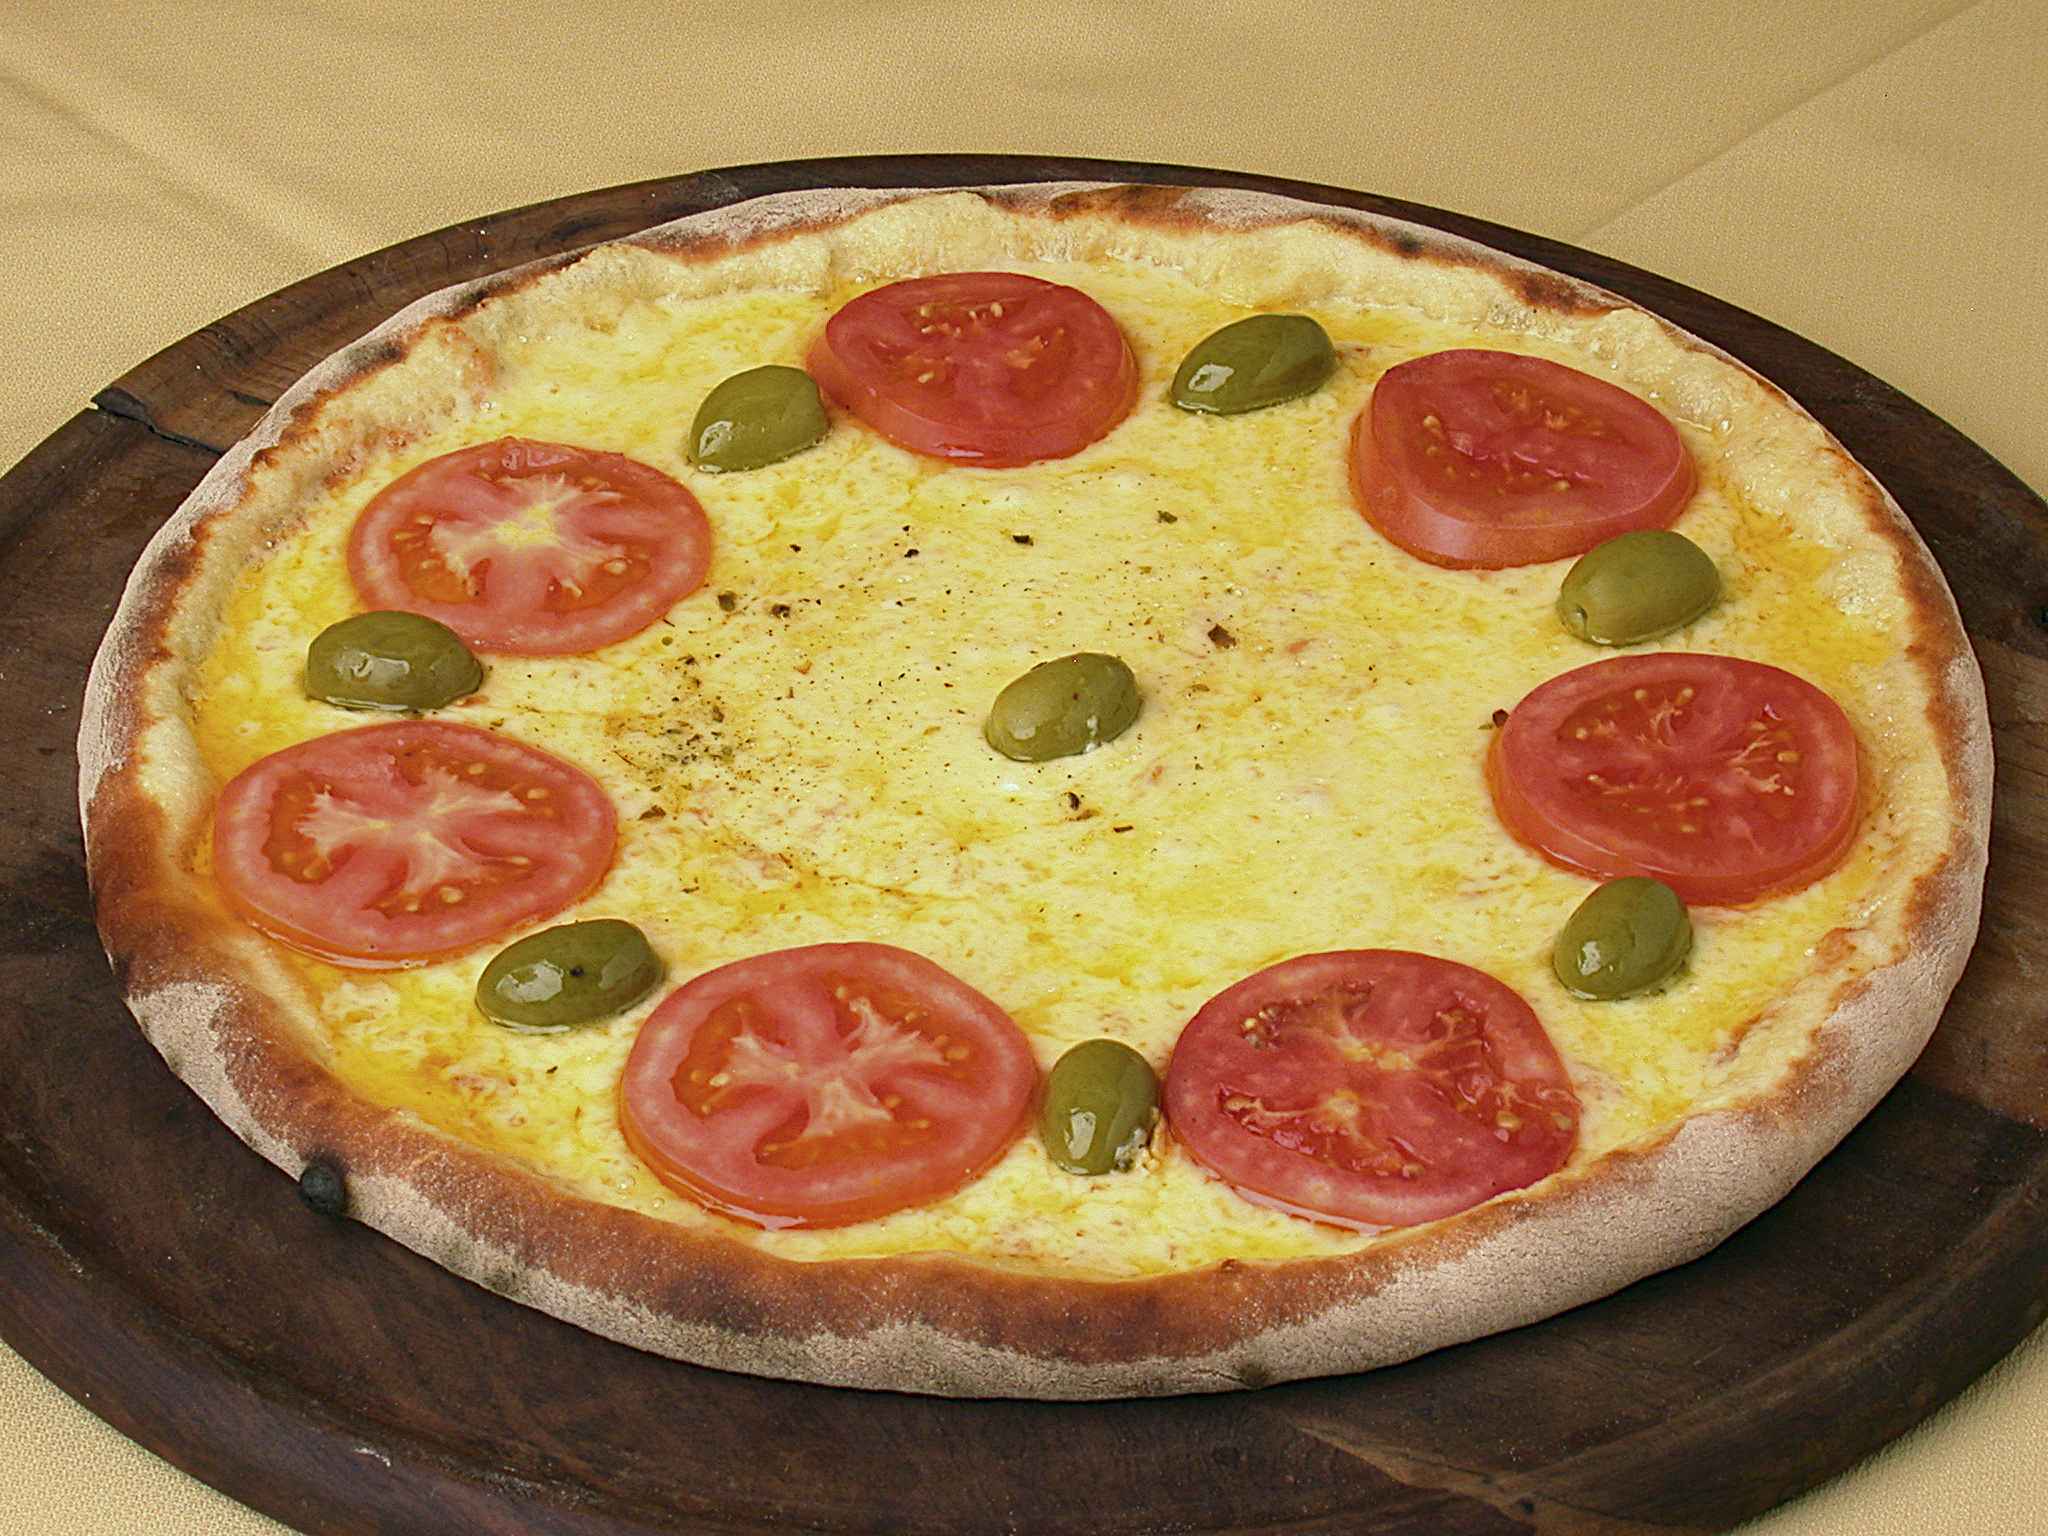 MELHOR RODÍZIO DE PIZZA DE SÃO PAULO / SUPER PIZZA PAN VILA